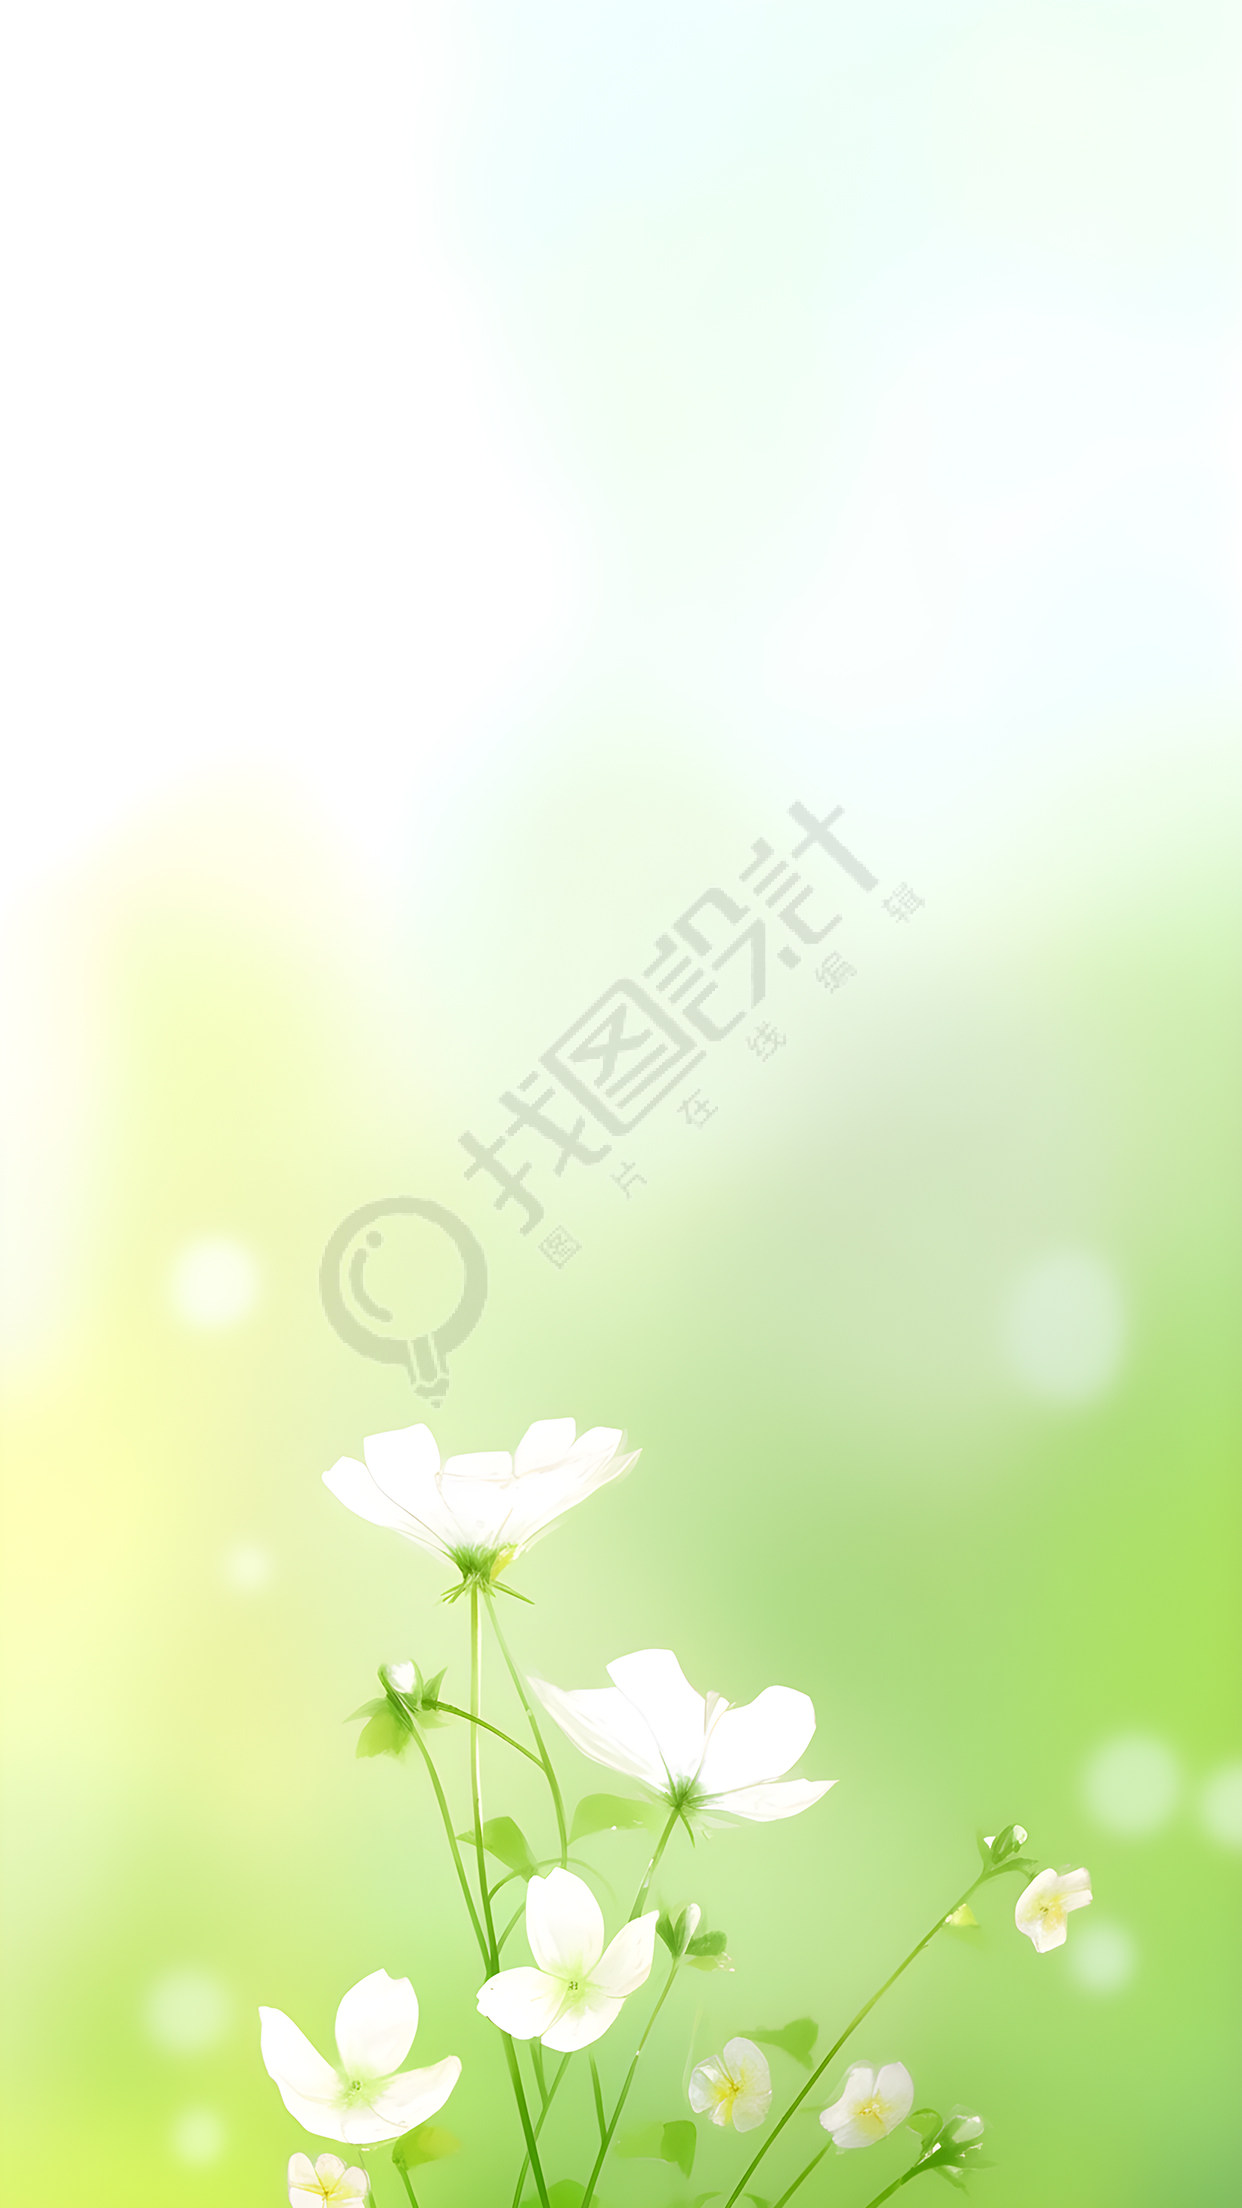 一束白色的小花唯美风景背景